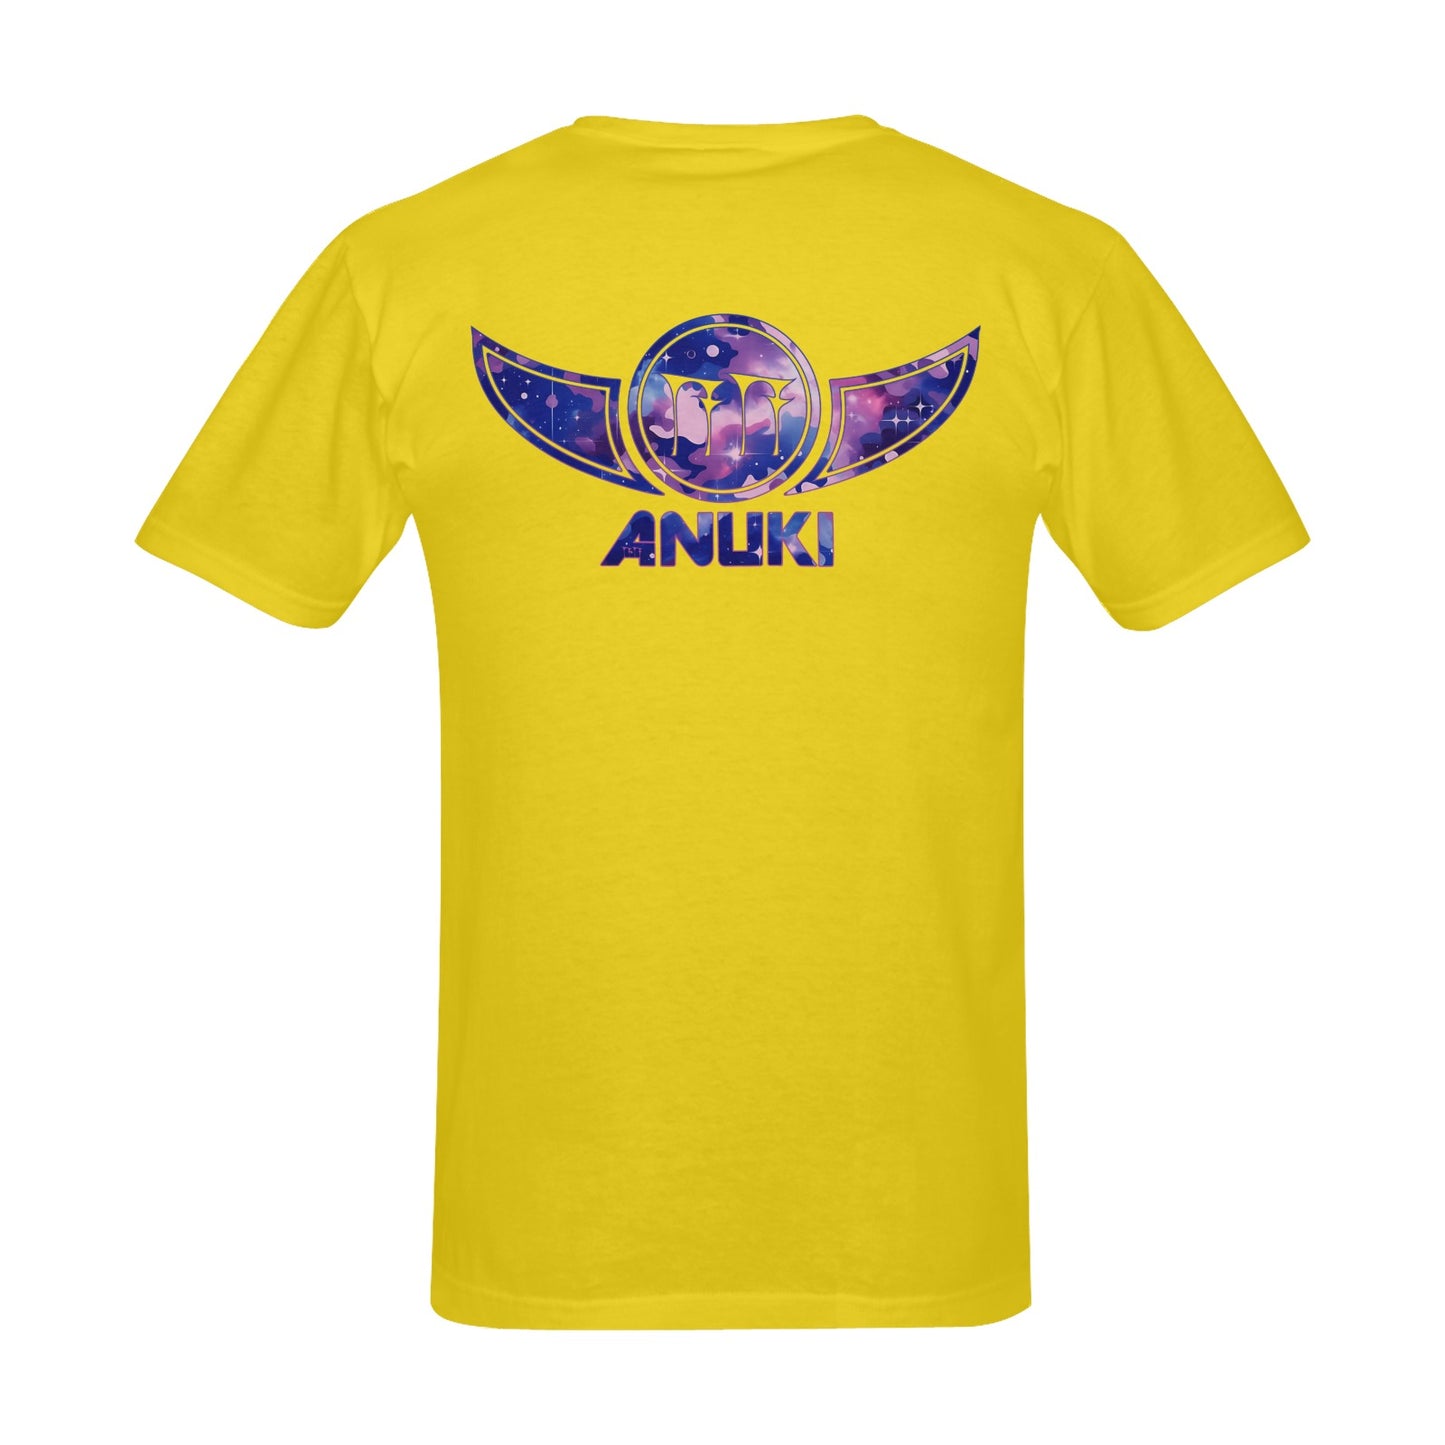 The AnukiCamo Blue T-Shirt 001 (Yellow)